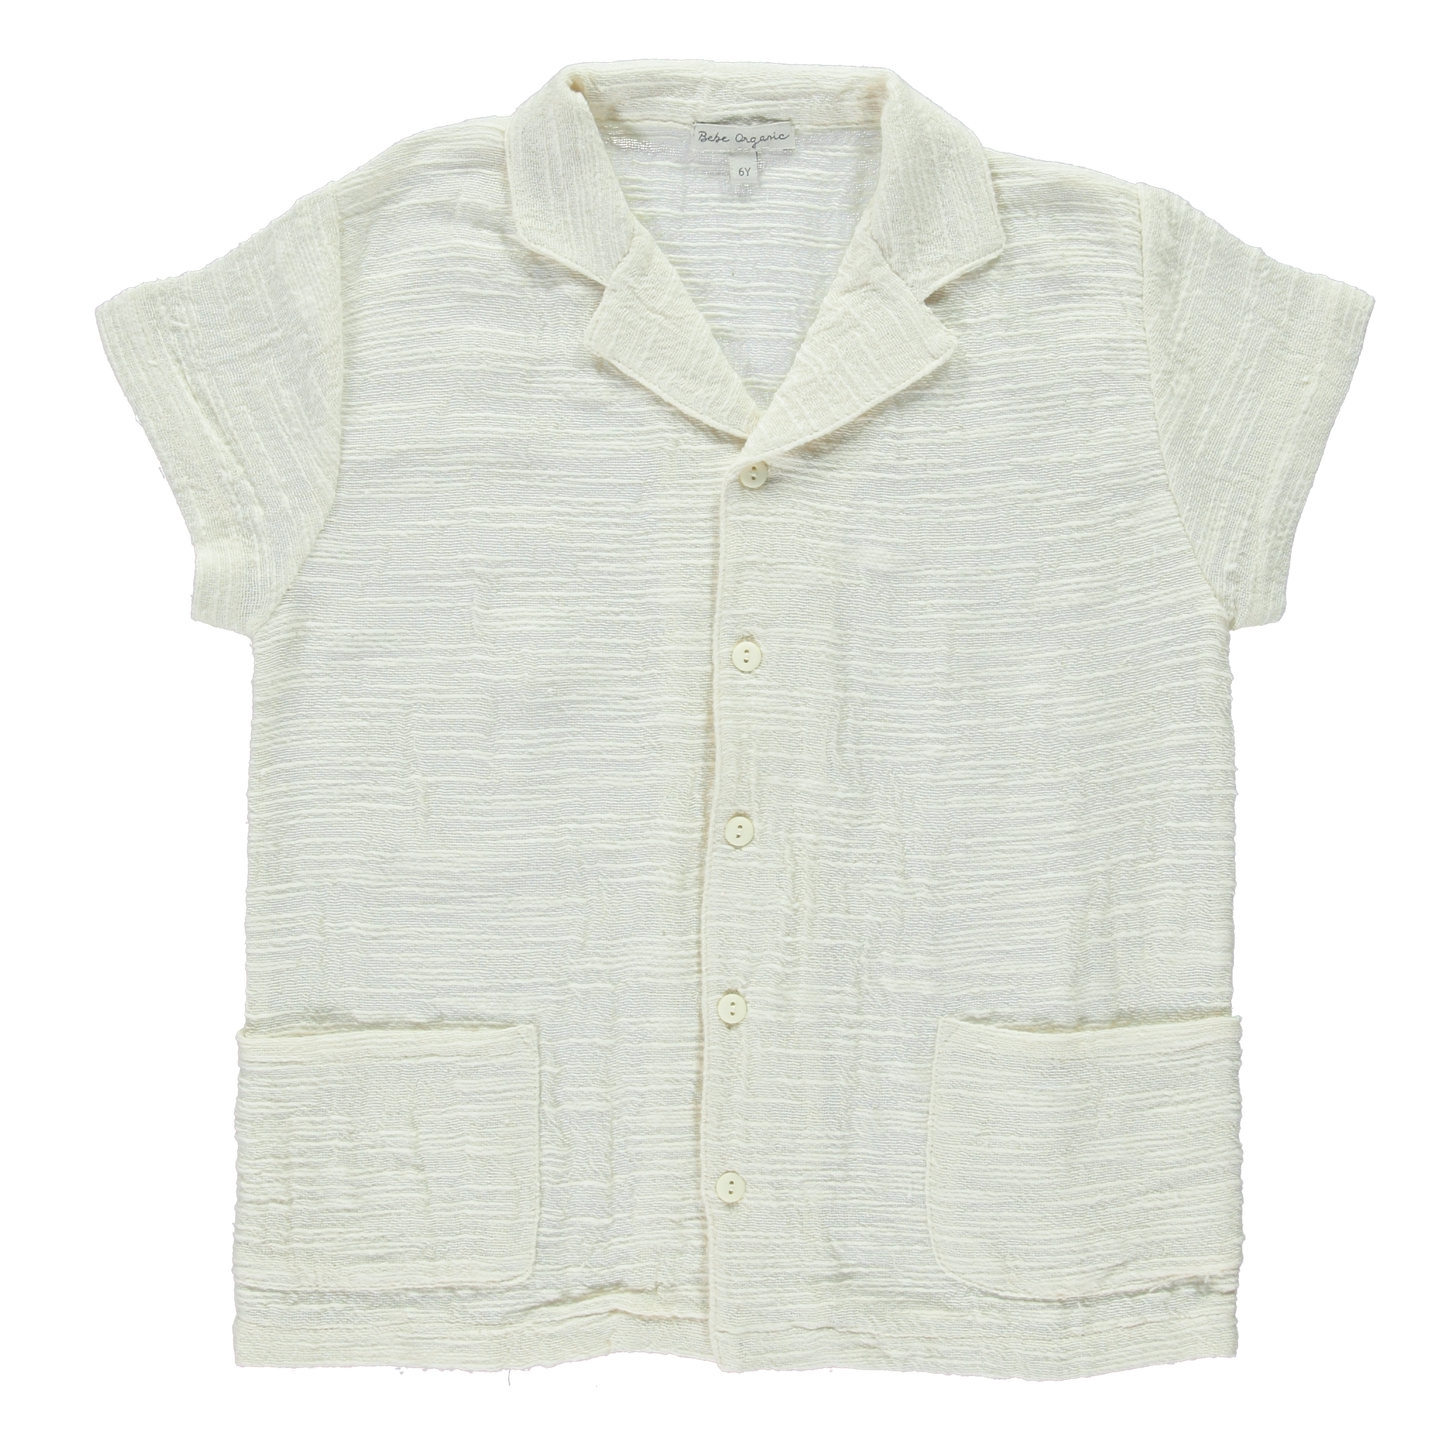 Noa Organic Cotton Shirt White